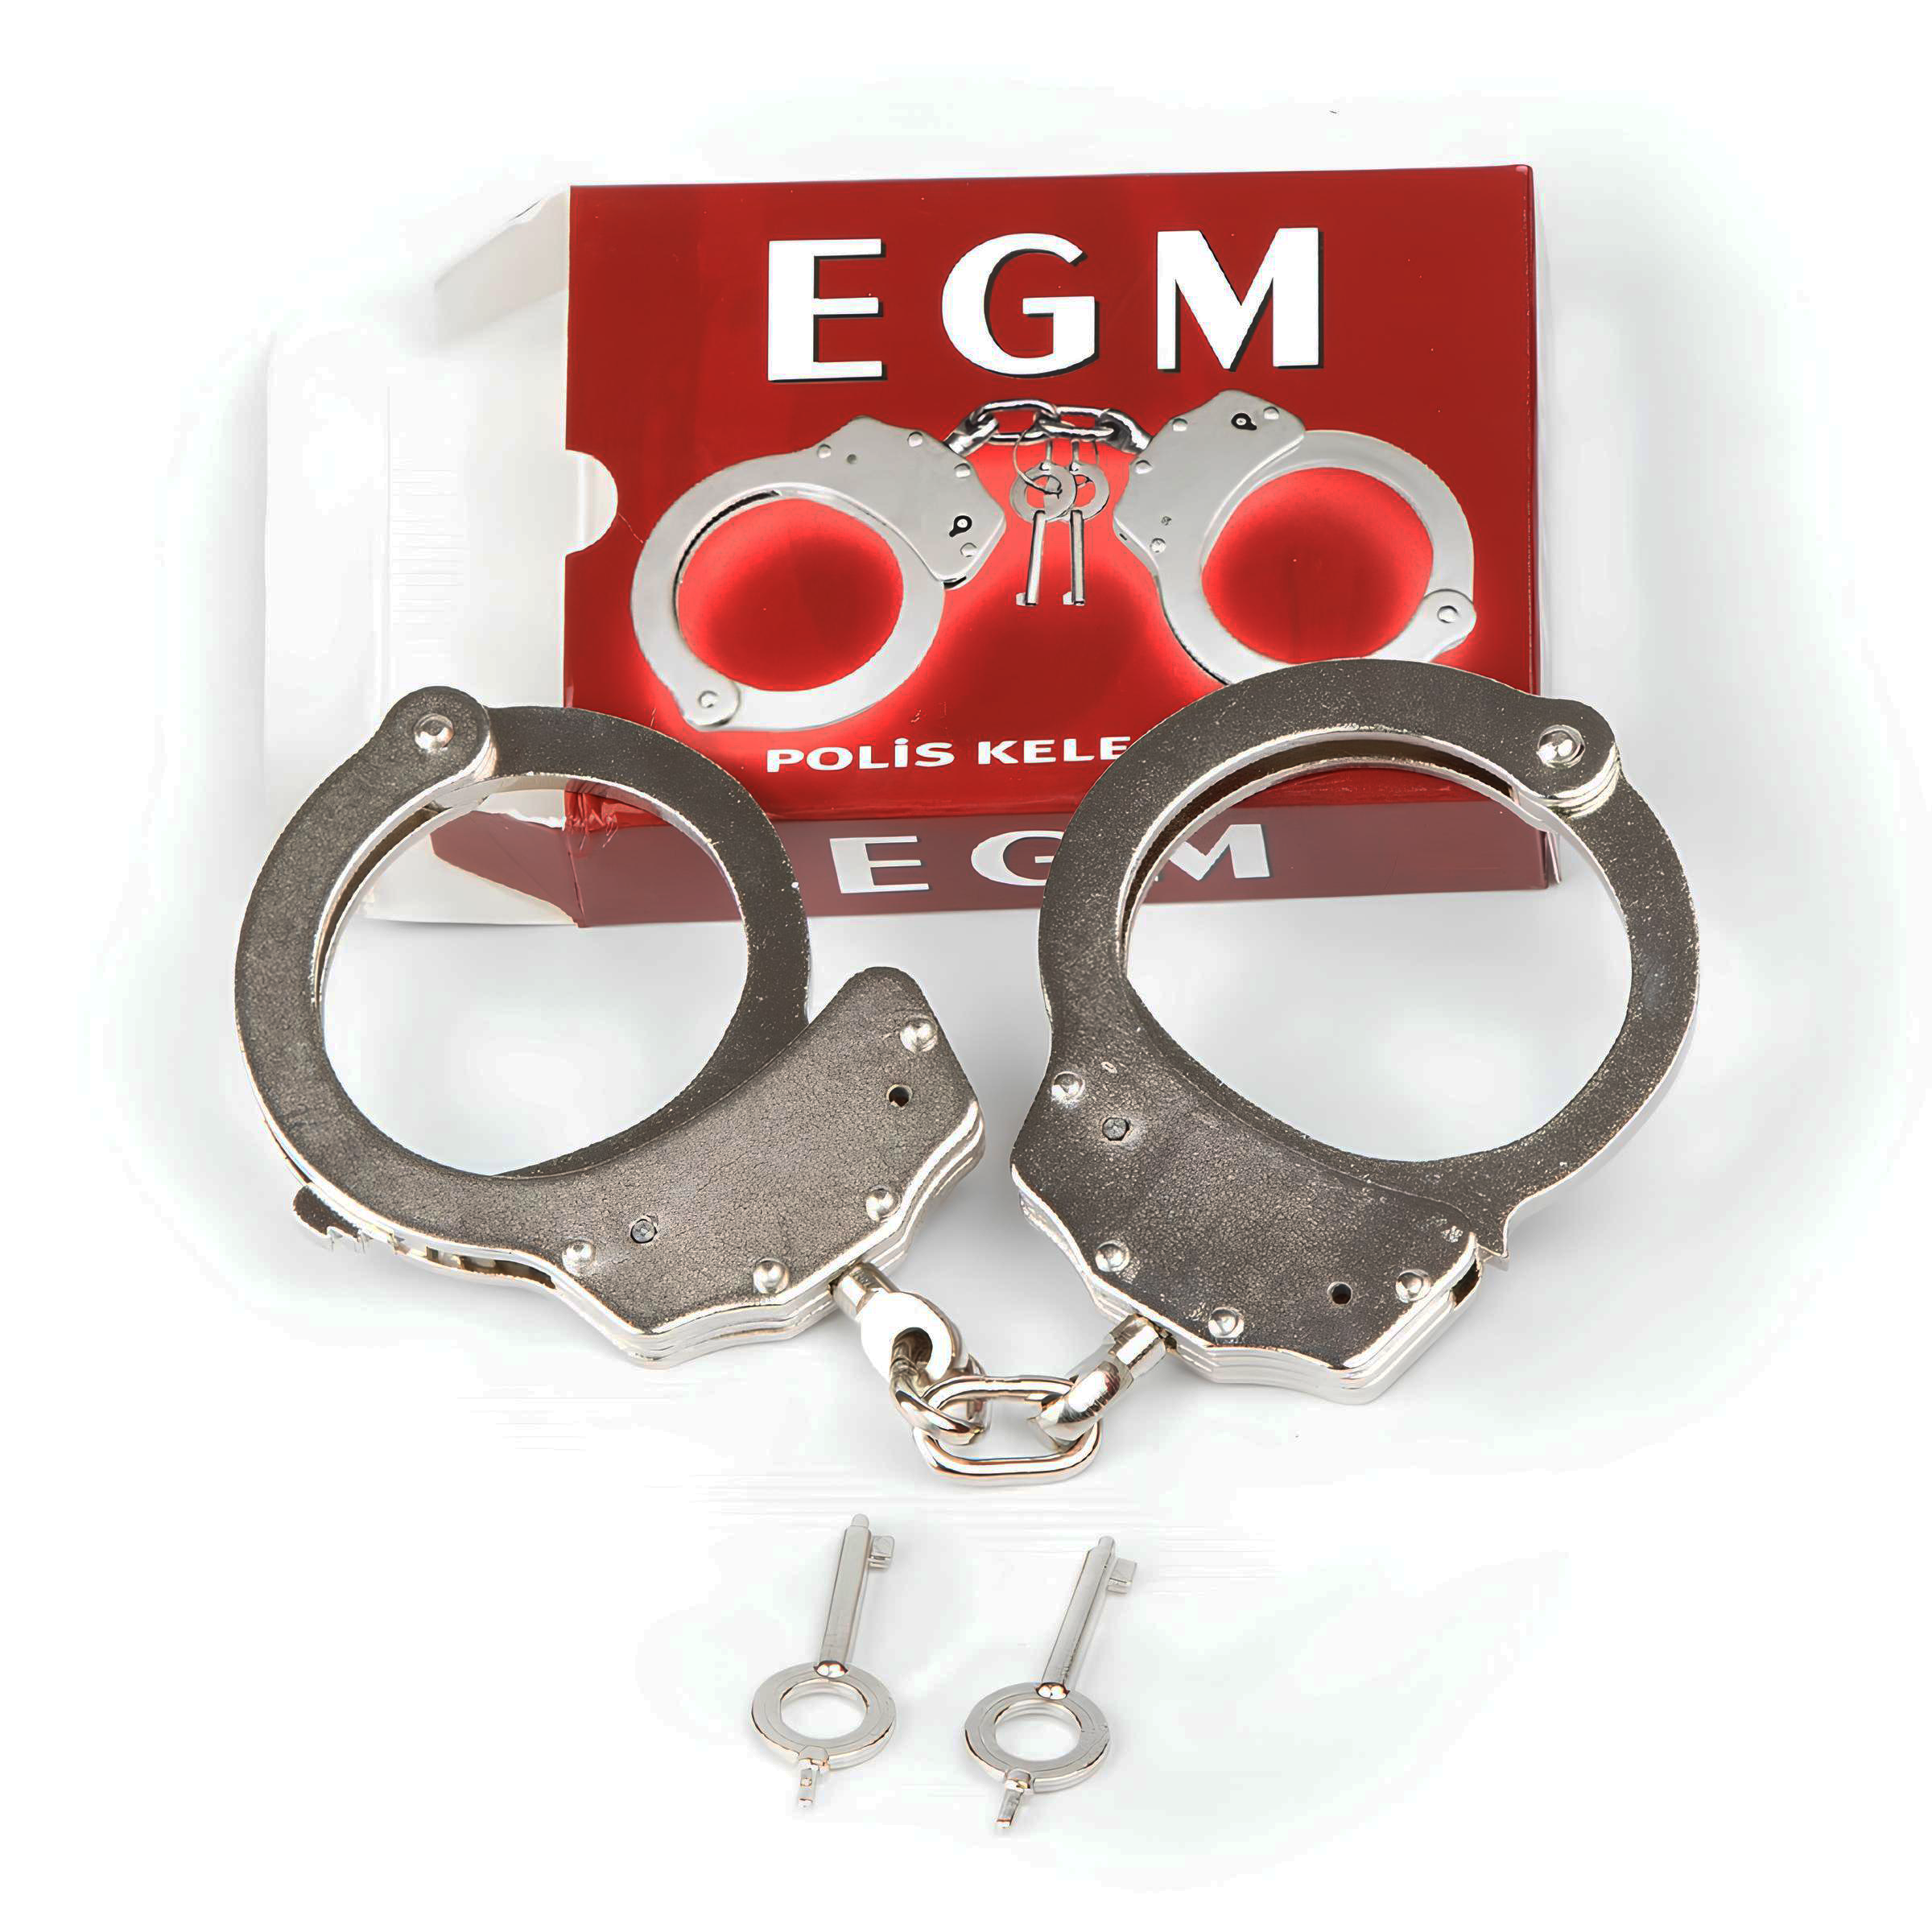 EGM Polis Kelepçesi, Metal Zincirli Polis Kelepçesi - Güvenlik Malzemeleri  Modelleri, Fiyatları | Şimşekoğlu Askeri Malzeme